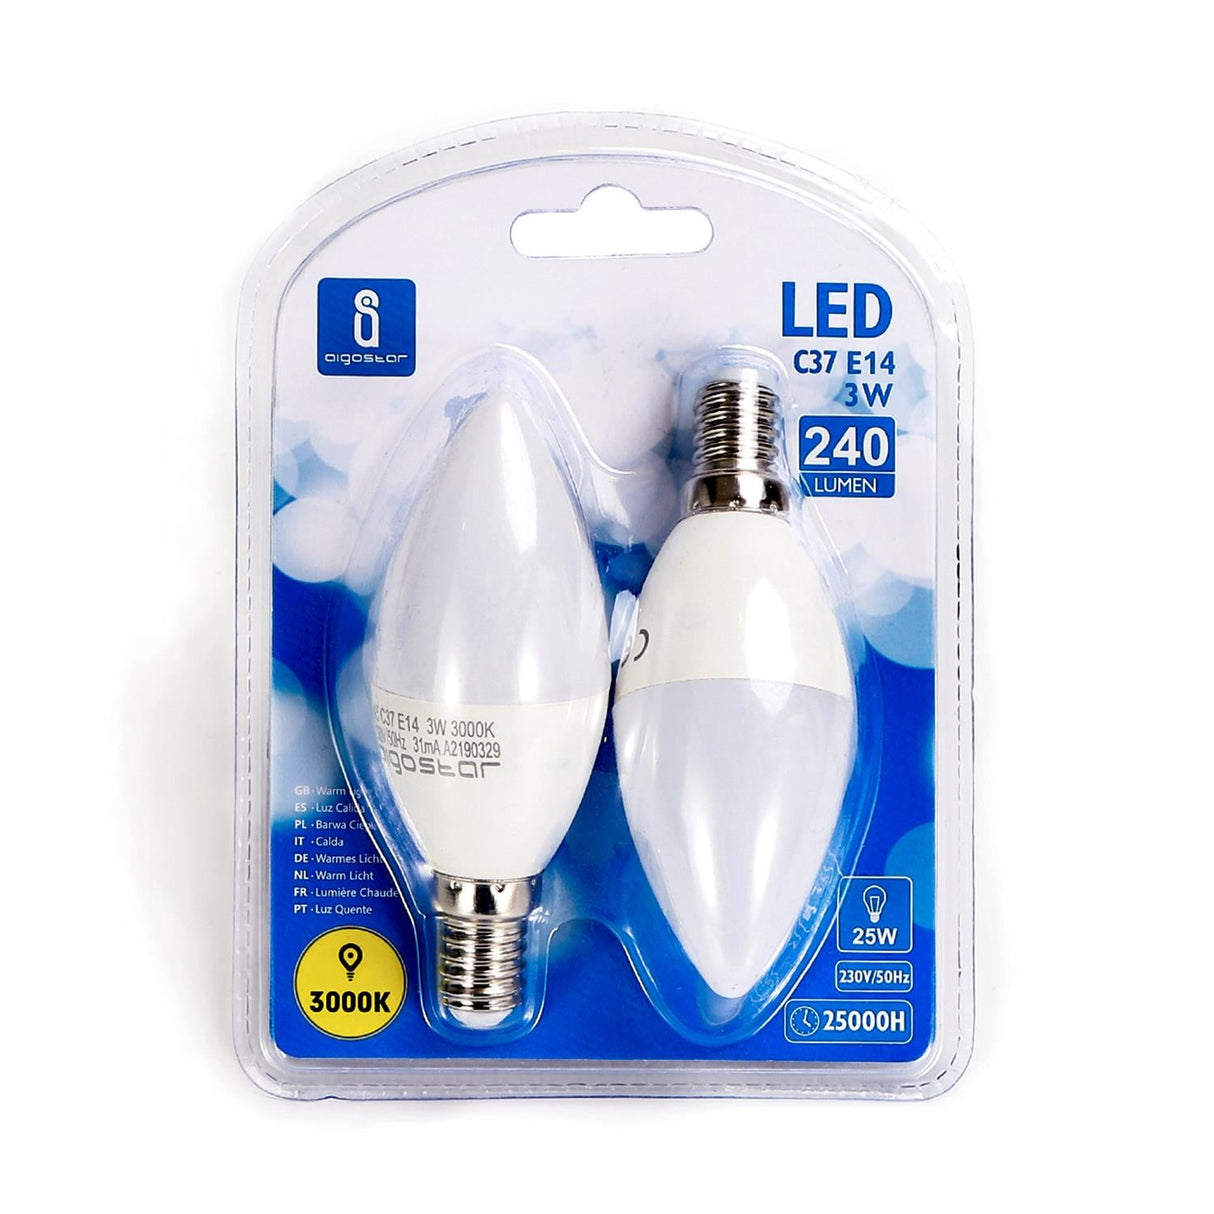 LED Leuchtmittel, E14, 3 W, 255 lm, 3000 K, 2 Stk.  Lichttechnik24.de.